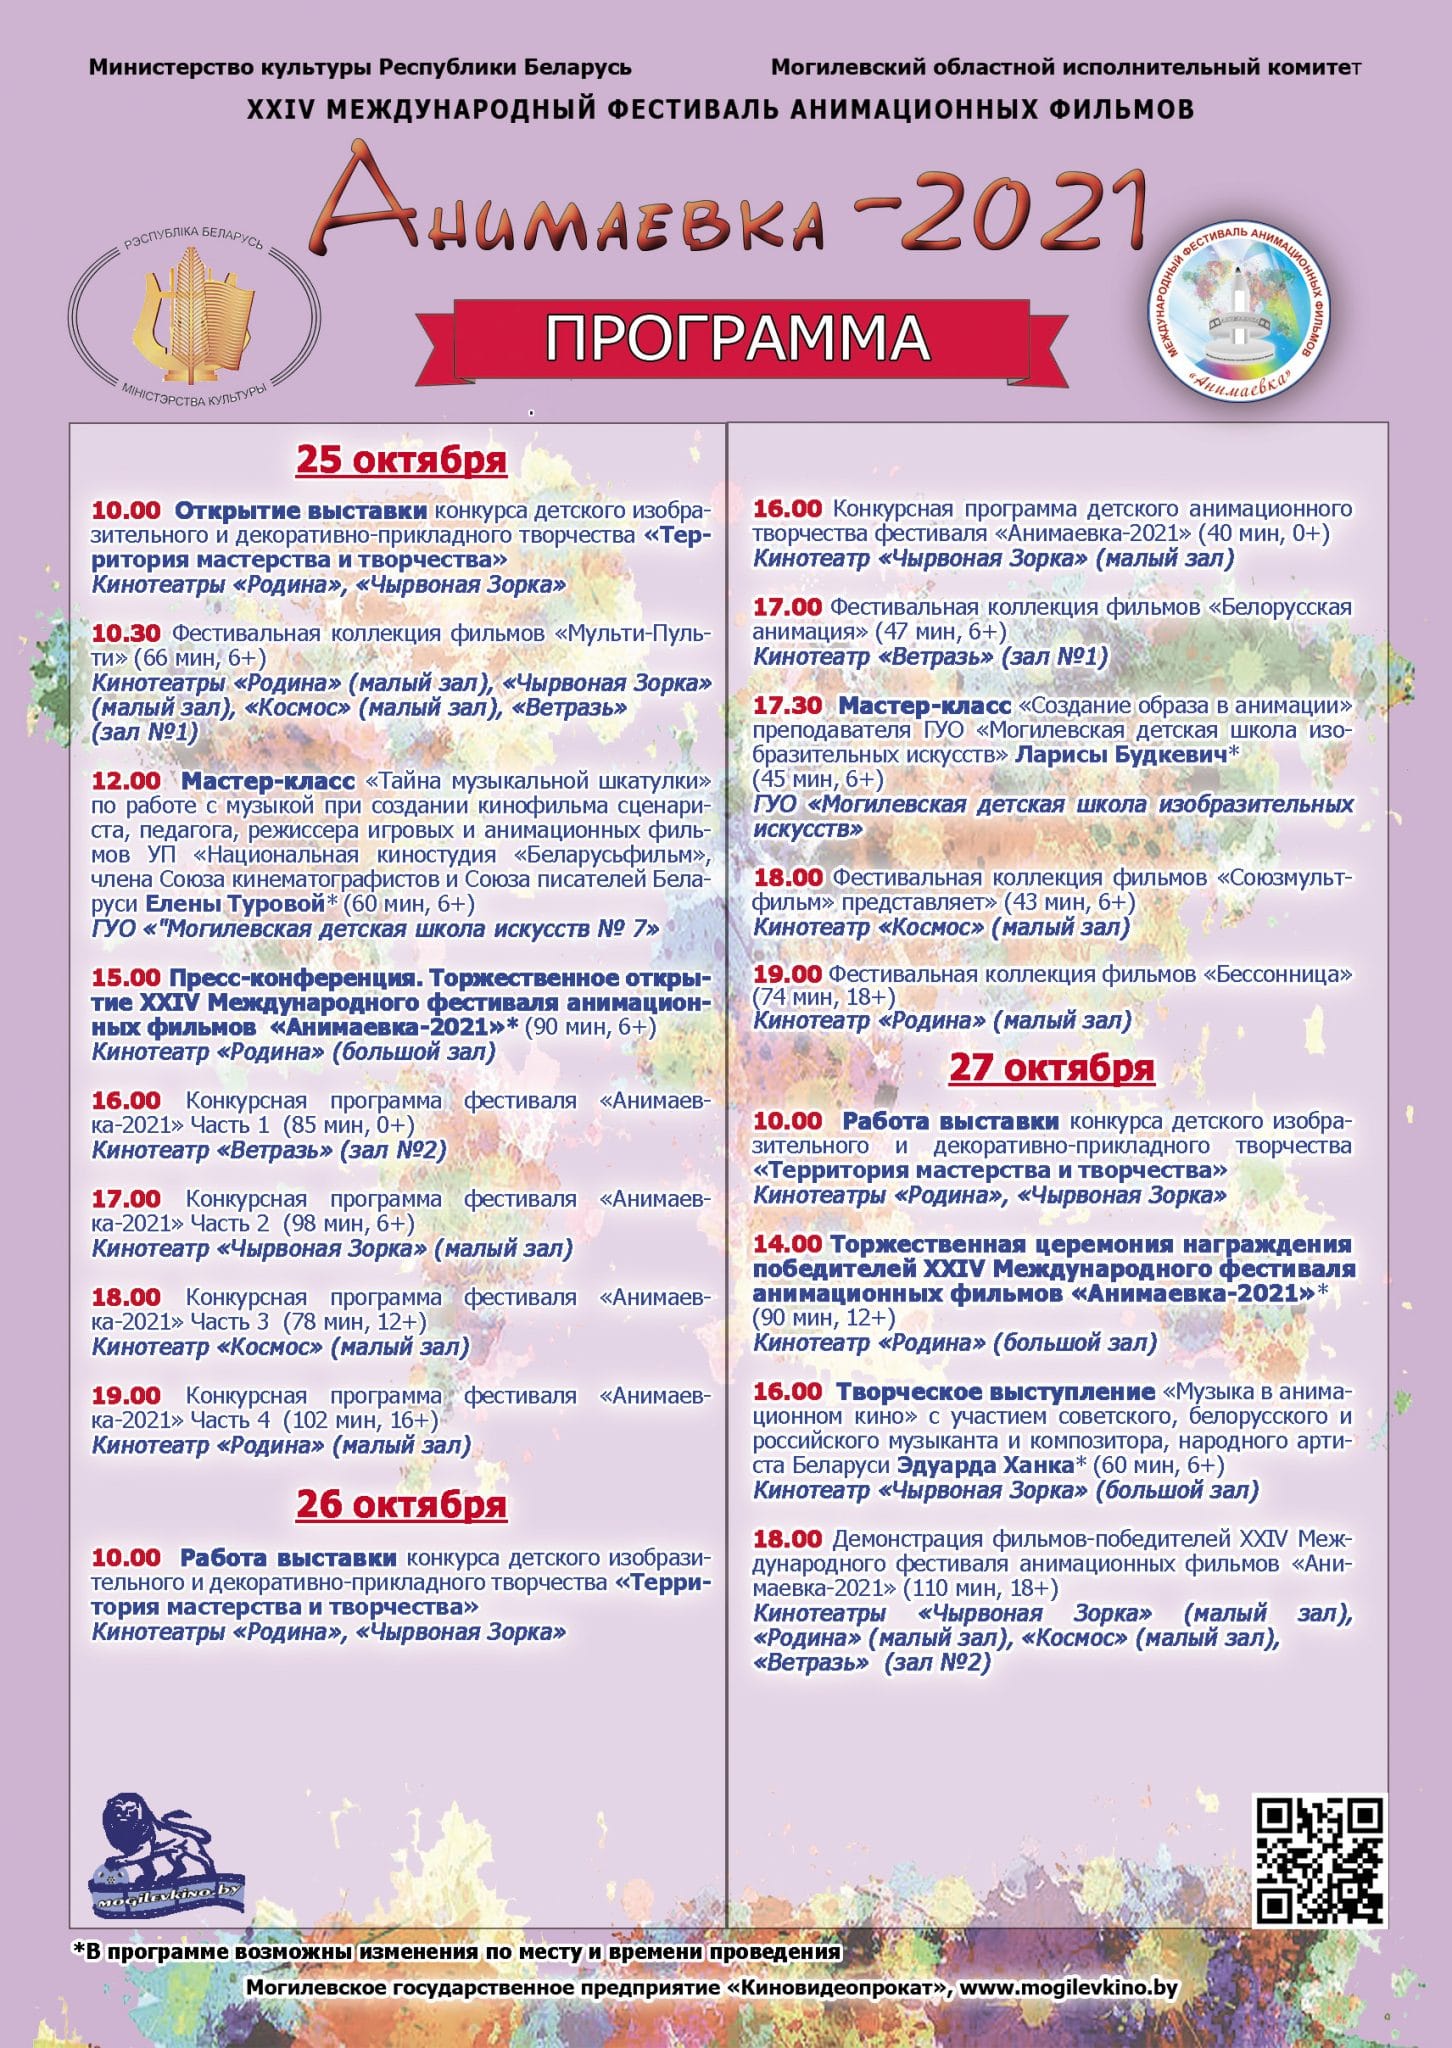 25 октября в Могилеве стартует фестиваль «Анимаевка-2021»